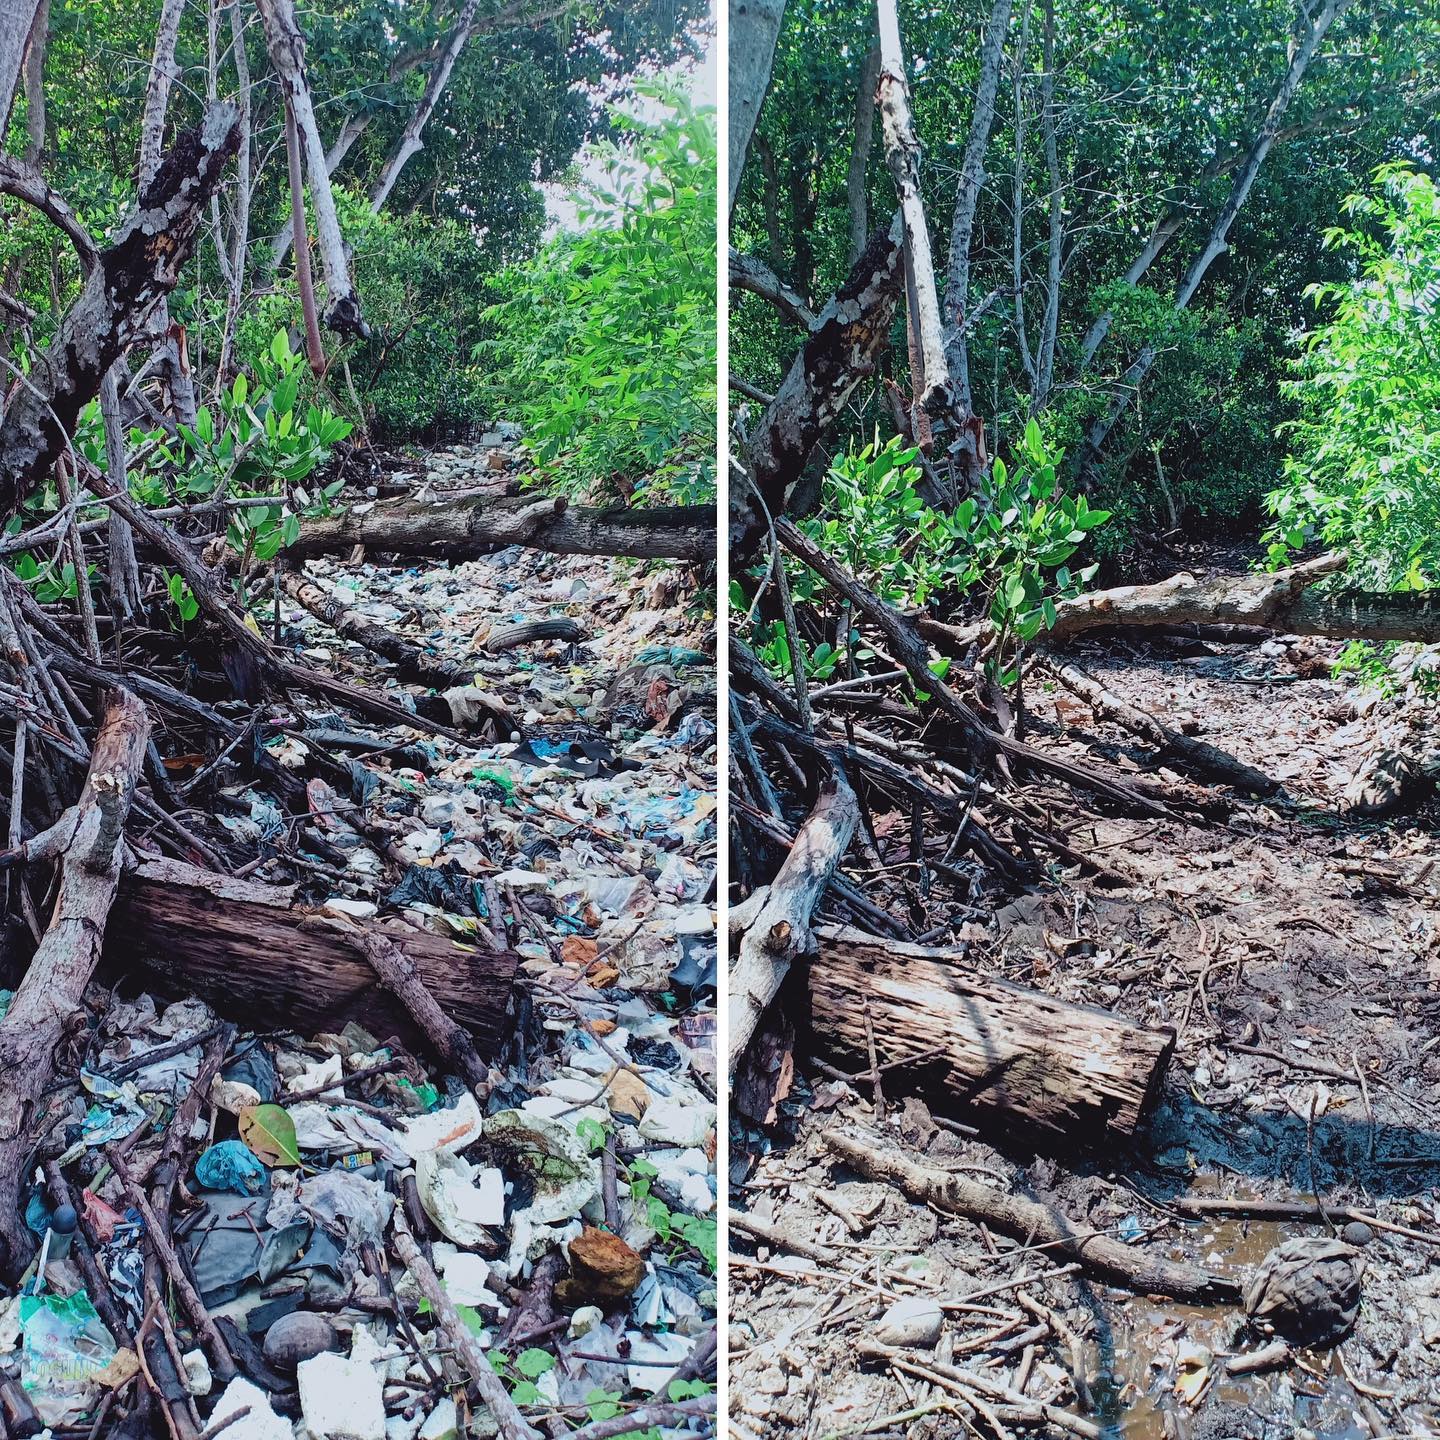 Sungai Watch organiseert spoedacties op illegale stortplaatsen en langs rivieroevers om te voorkomen dat plastic in de rivieren terechtkomt, en werkt aan de handhaving van goed afvalbeheer op lokaal niveau.